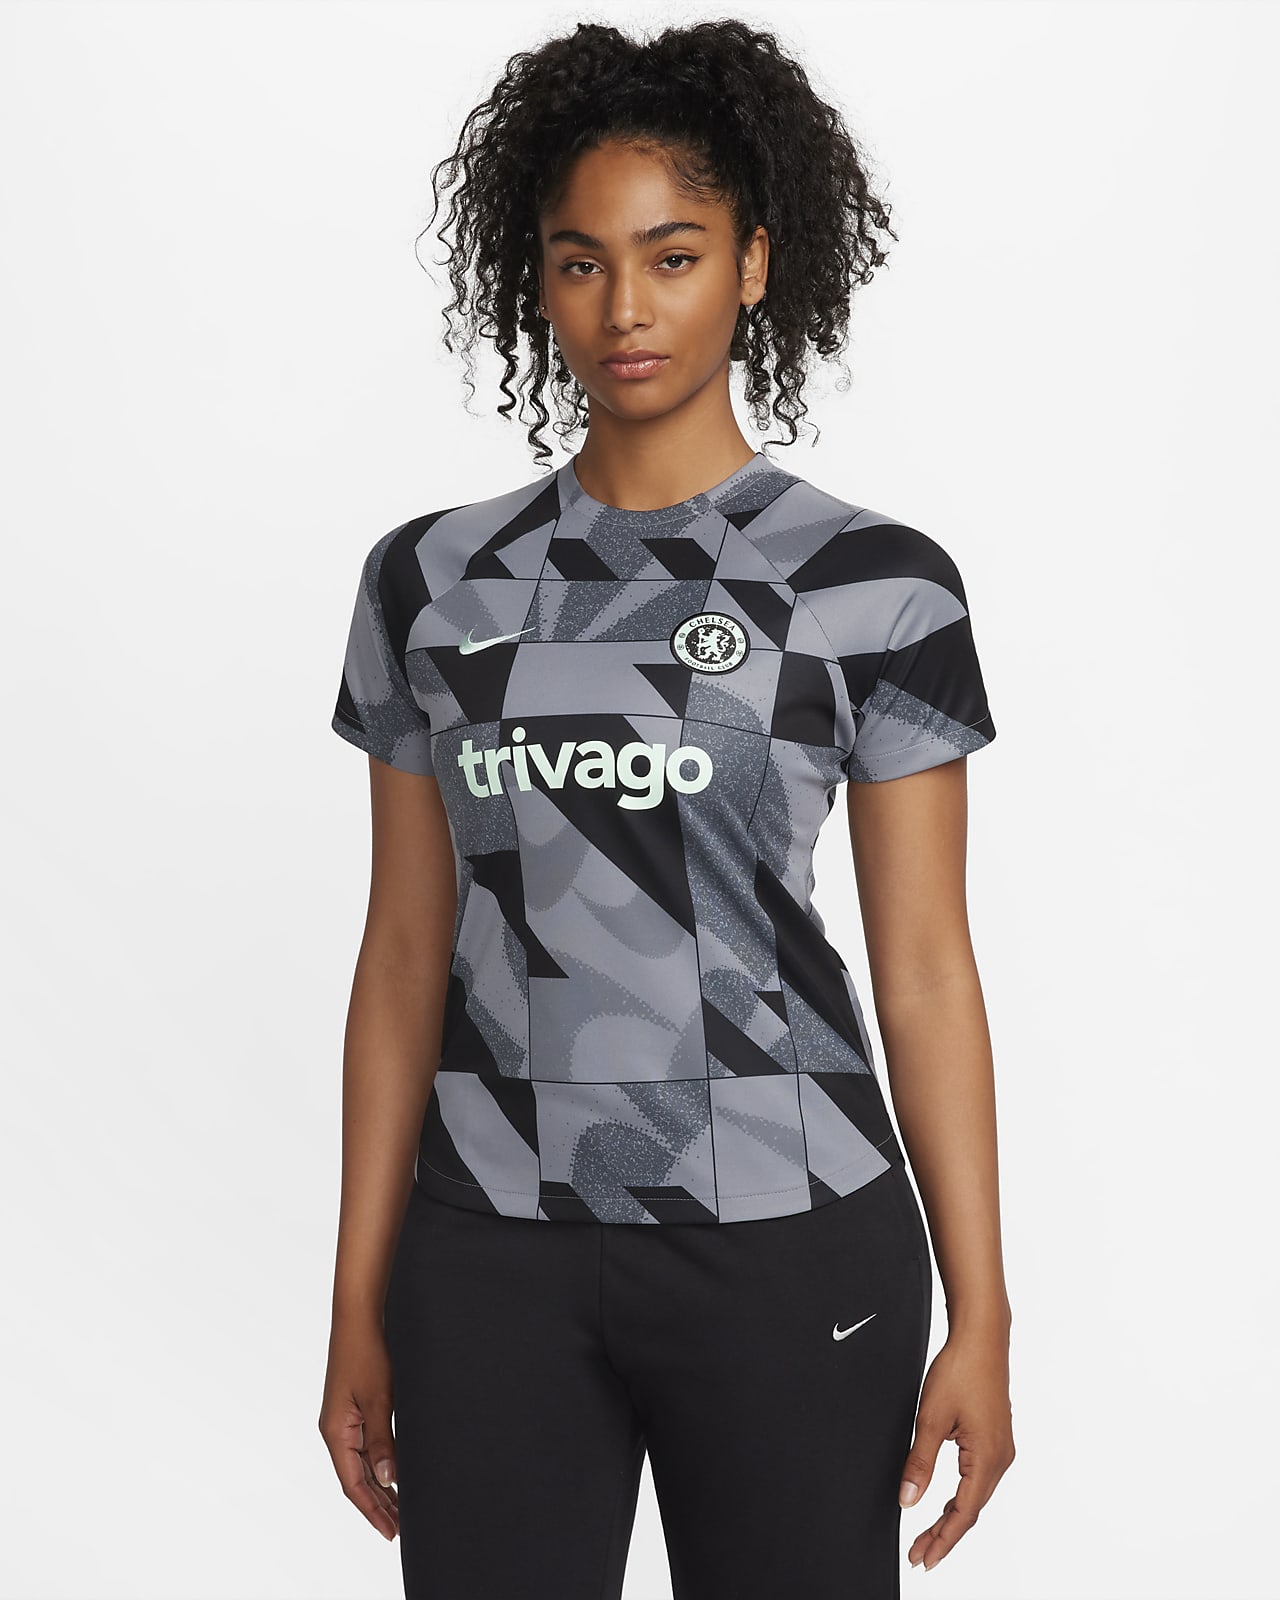 Γυναικεία ποδοσφαιρική κοντομάνικη μπλούζα προθέρμανσης Nike Dri-FIT εναλλακτικής εμφάνισης Τσέλσι Academy Pro